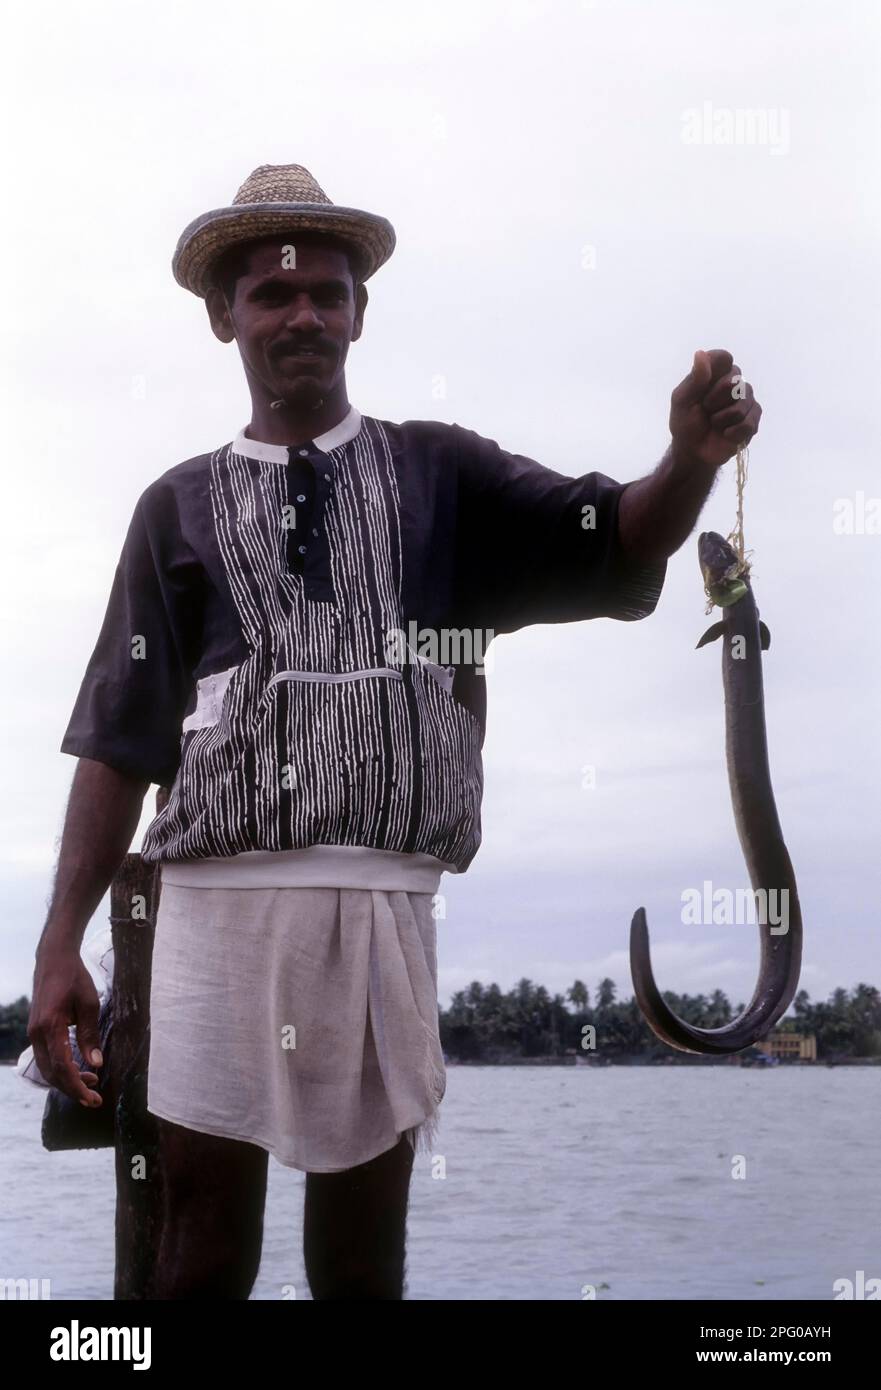 Ein (Anguilliformes) Fischer fing Aalfisch und stand auf dem Boden des chinesischen Fischernetzes in Fort Kochi oder Cochin, Kerala, Indien, Asien Stockfoto